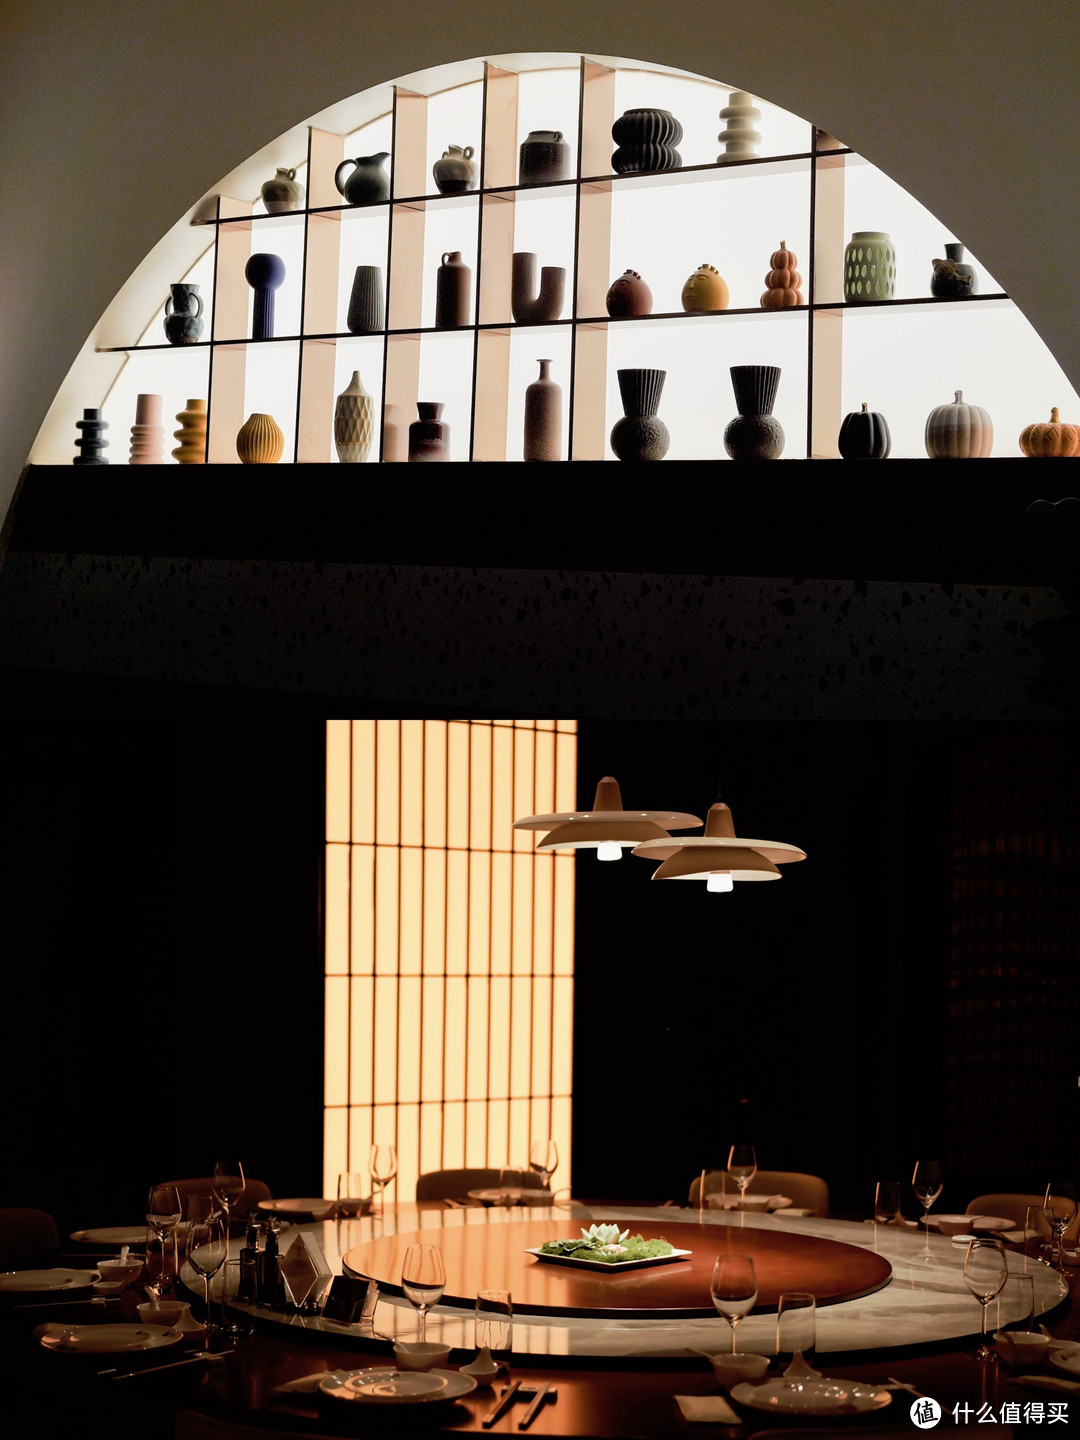 厦门瓷器餐厅文化|带娃赴一场艺术的美食之旅